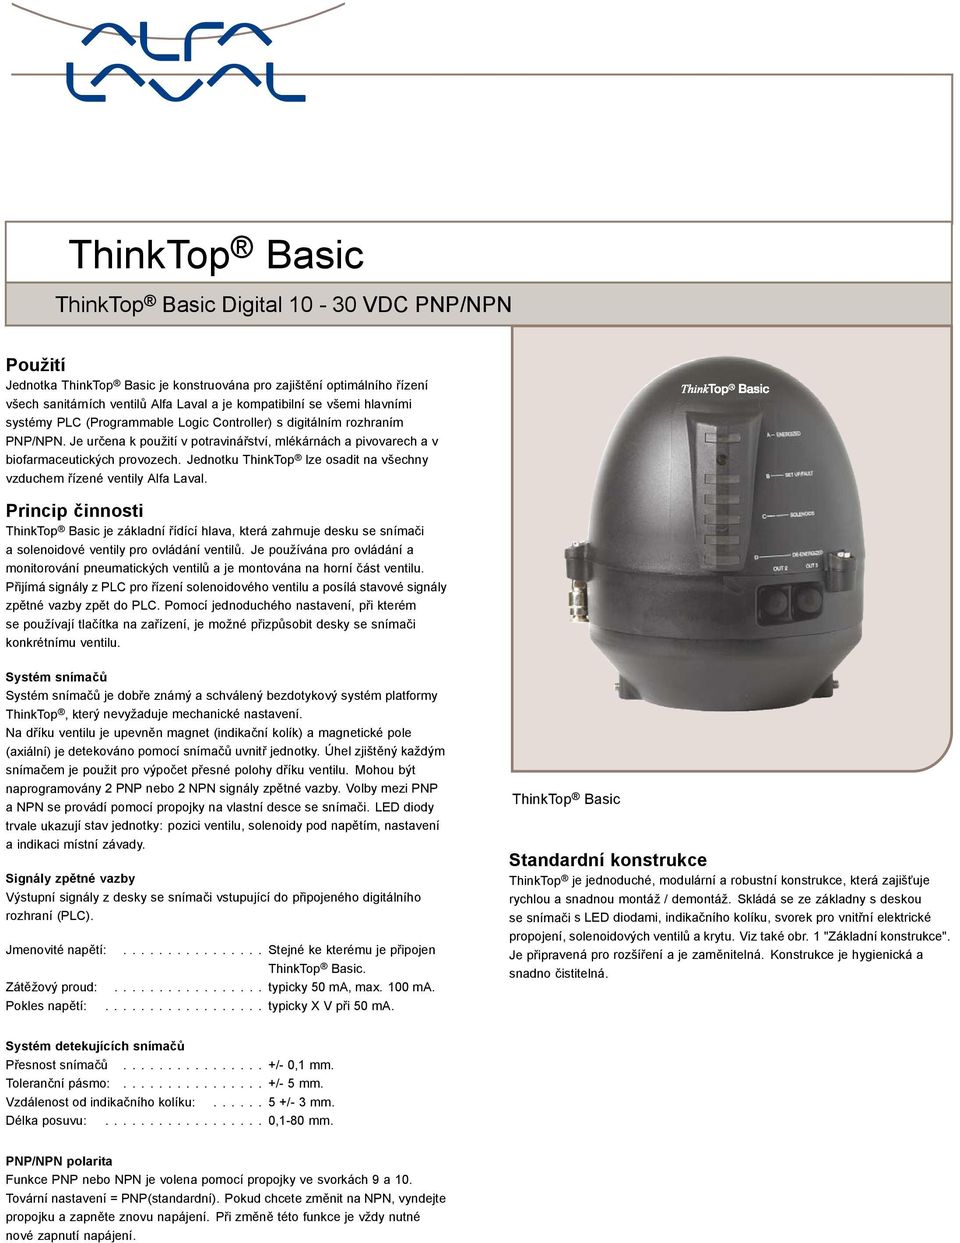 ThinkTop lze osadit na všechny vzduchem řízené ventily Alfa Laval Princip činnosti ThinkTop Basic je základní řídící hlava, která zahrnuje desku se snímači a solenoidové ventily pro ovládání ventilů